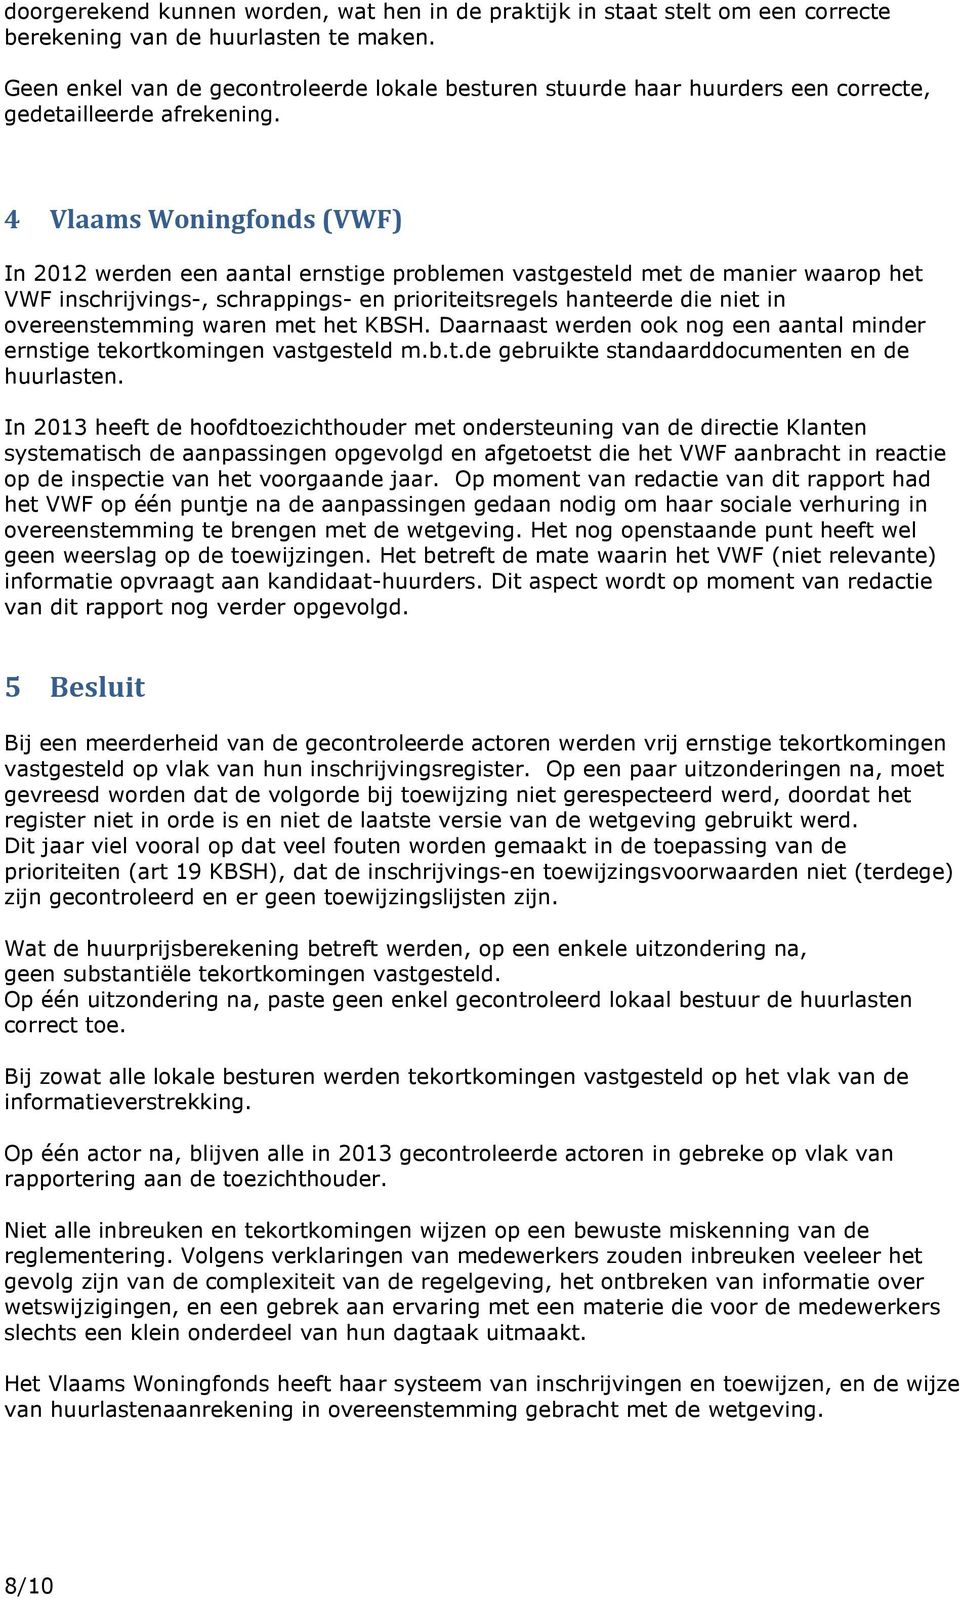 4 Vlaams Woningfonds (VWF) In 2012 werden een aantal ernstige problemen vastgesteld met de manier waarop het VWF inschrijvings-, schrappings- en prioriteitsregels hanteerde die niet in